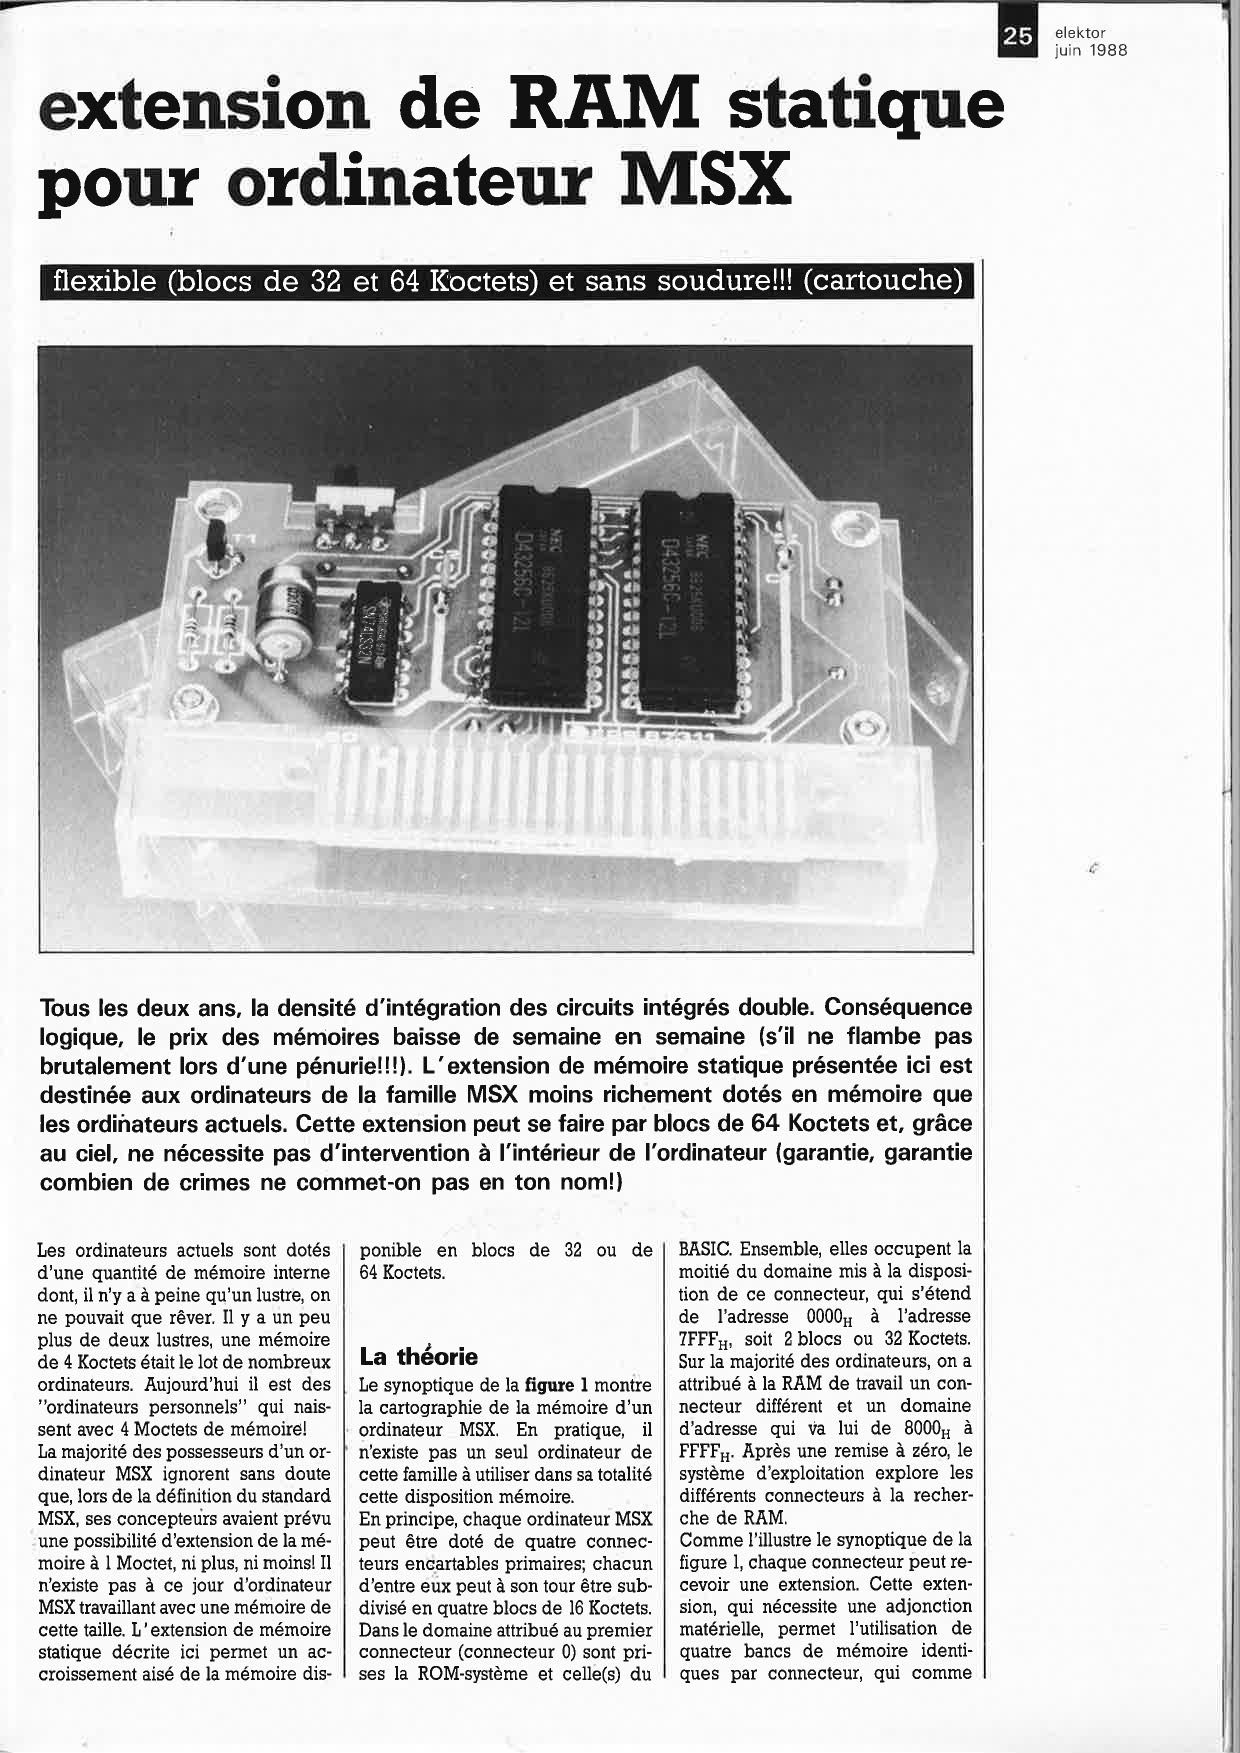 extension de RAM statique pour ordinateur MSX